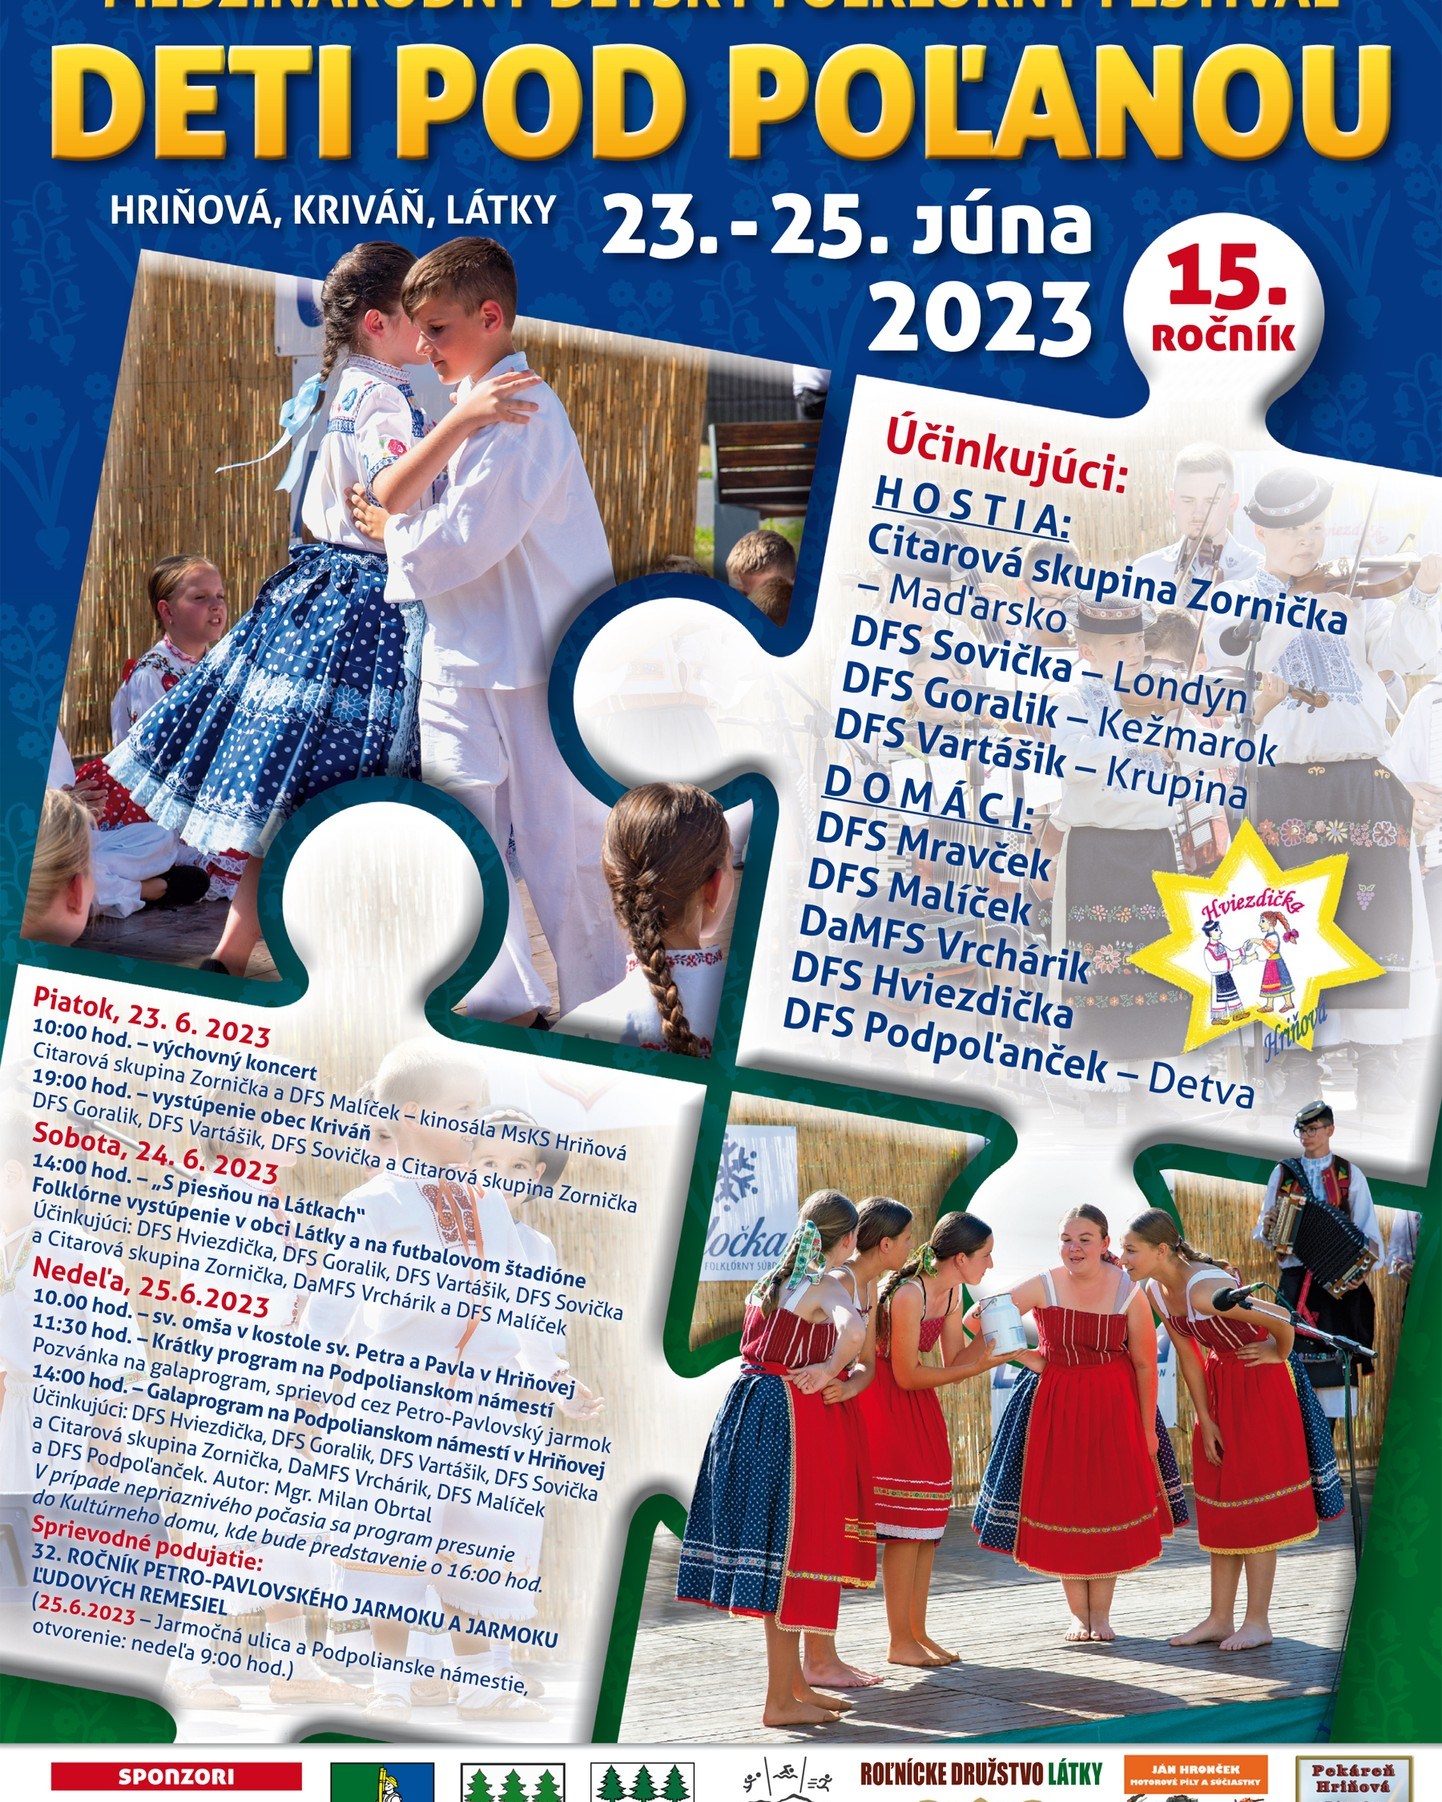 Deti pod Poanou 2023 Hriov - 15. ronk detskho folklrneho festivalu 